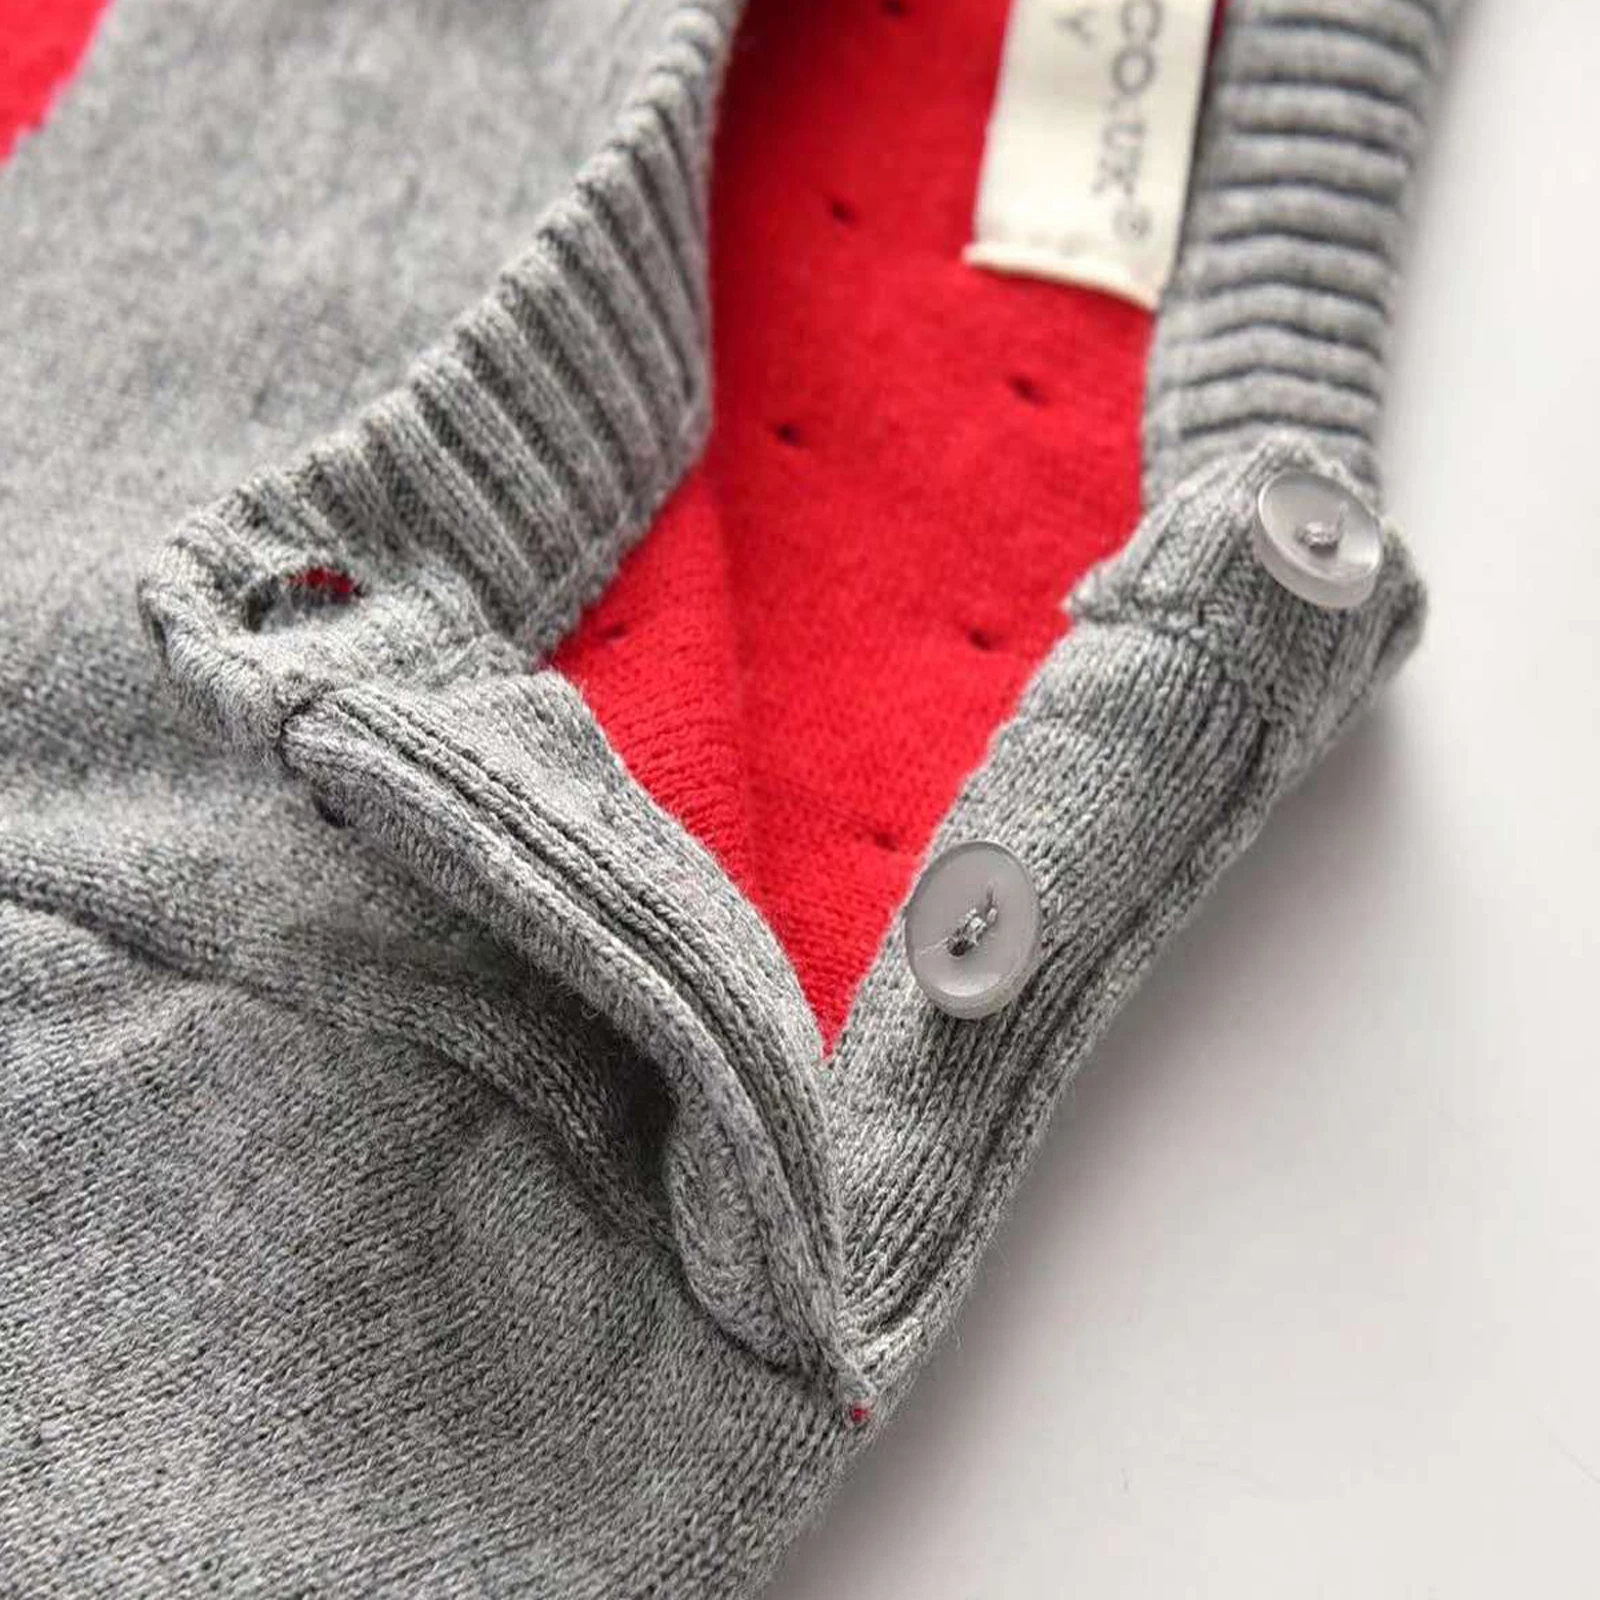 Efterår og Vinter Spædbarn Baby Piger Sweater Kjole For 1-5Y Hjerte Print Strik med Lange Ærmer Flæser A-Line Mini-Dress